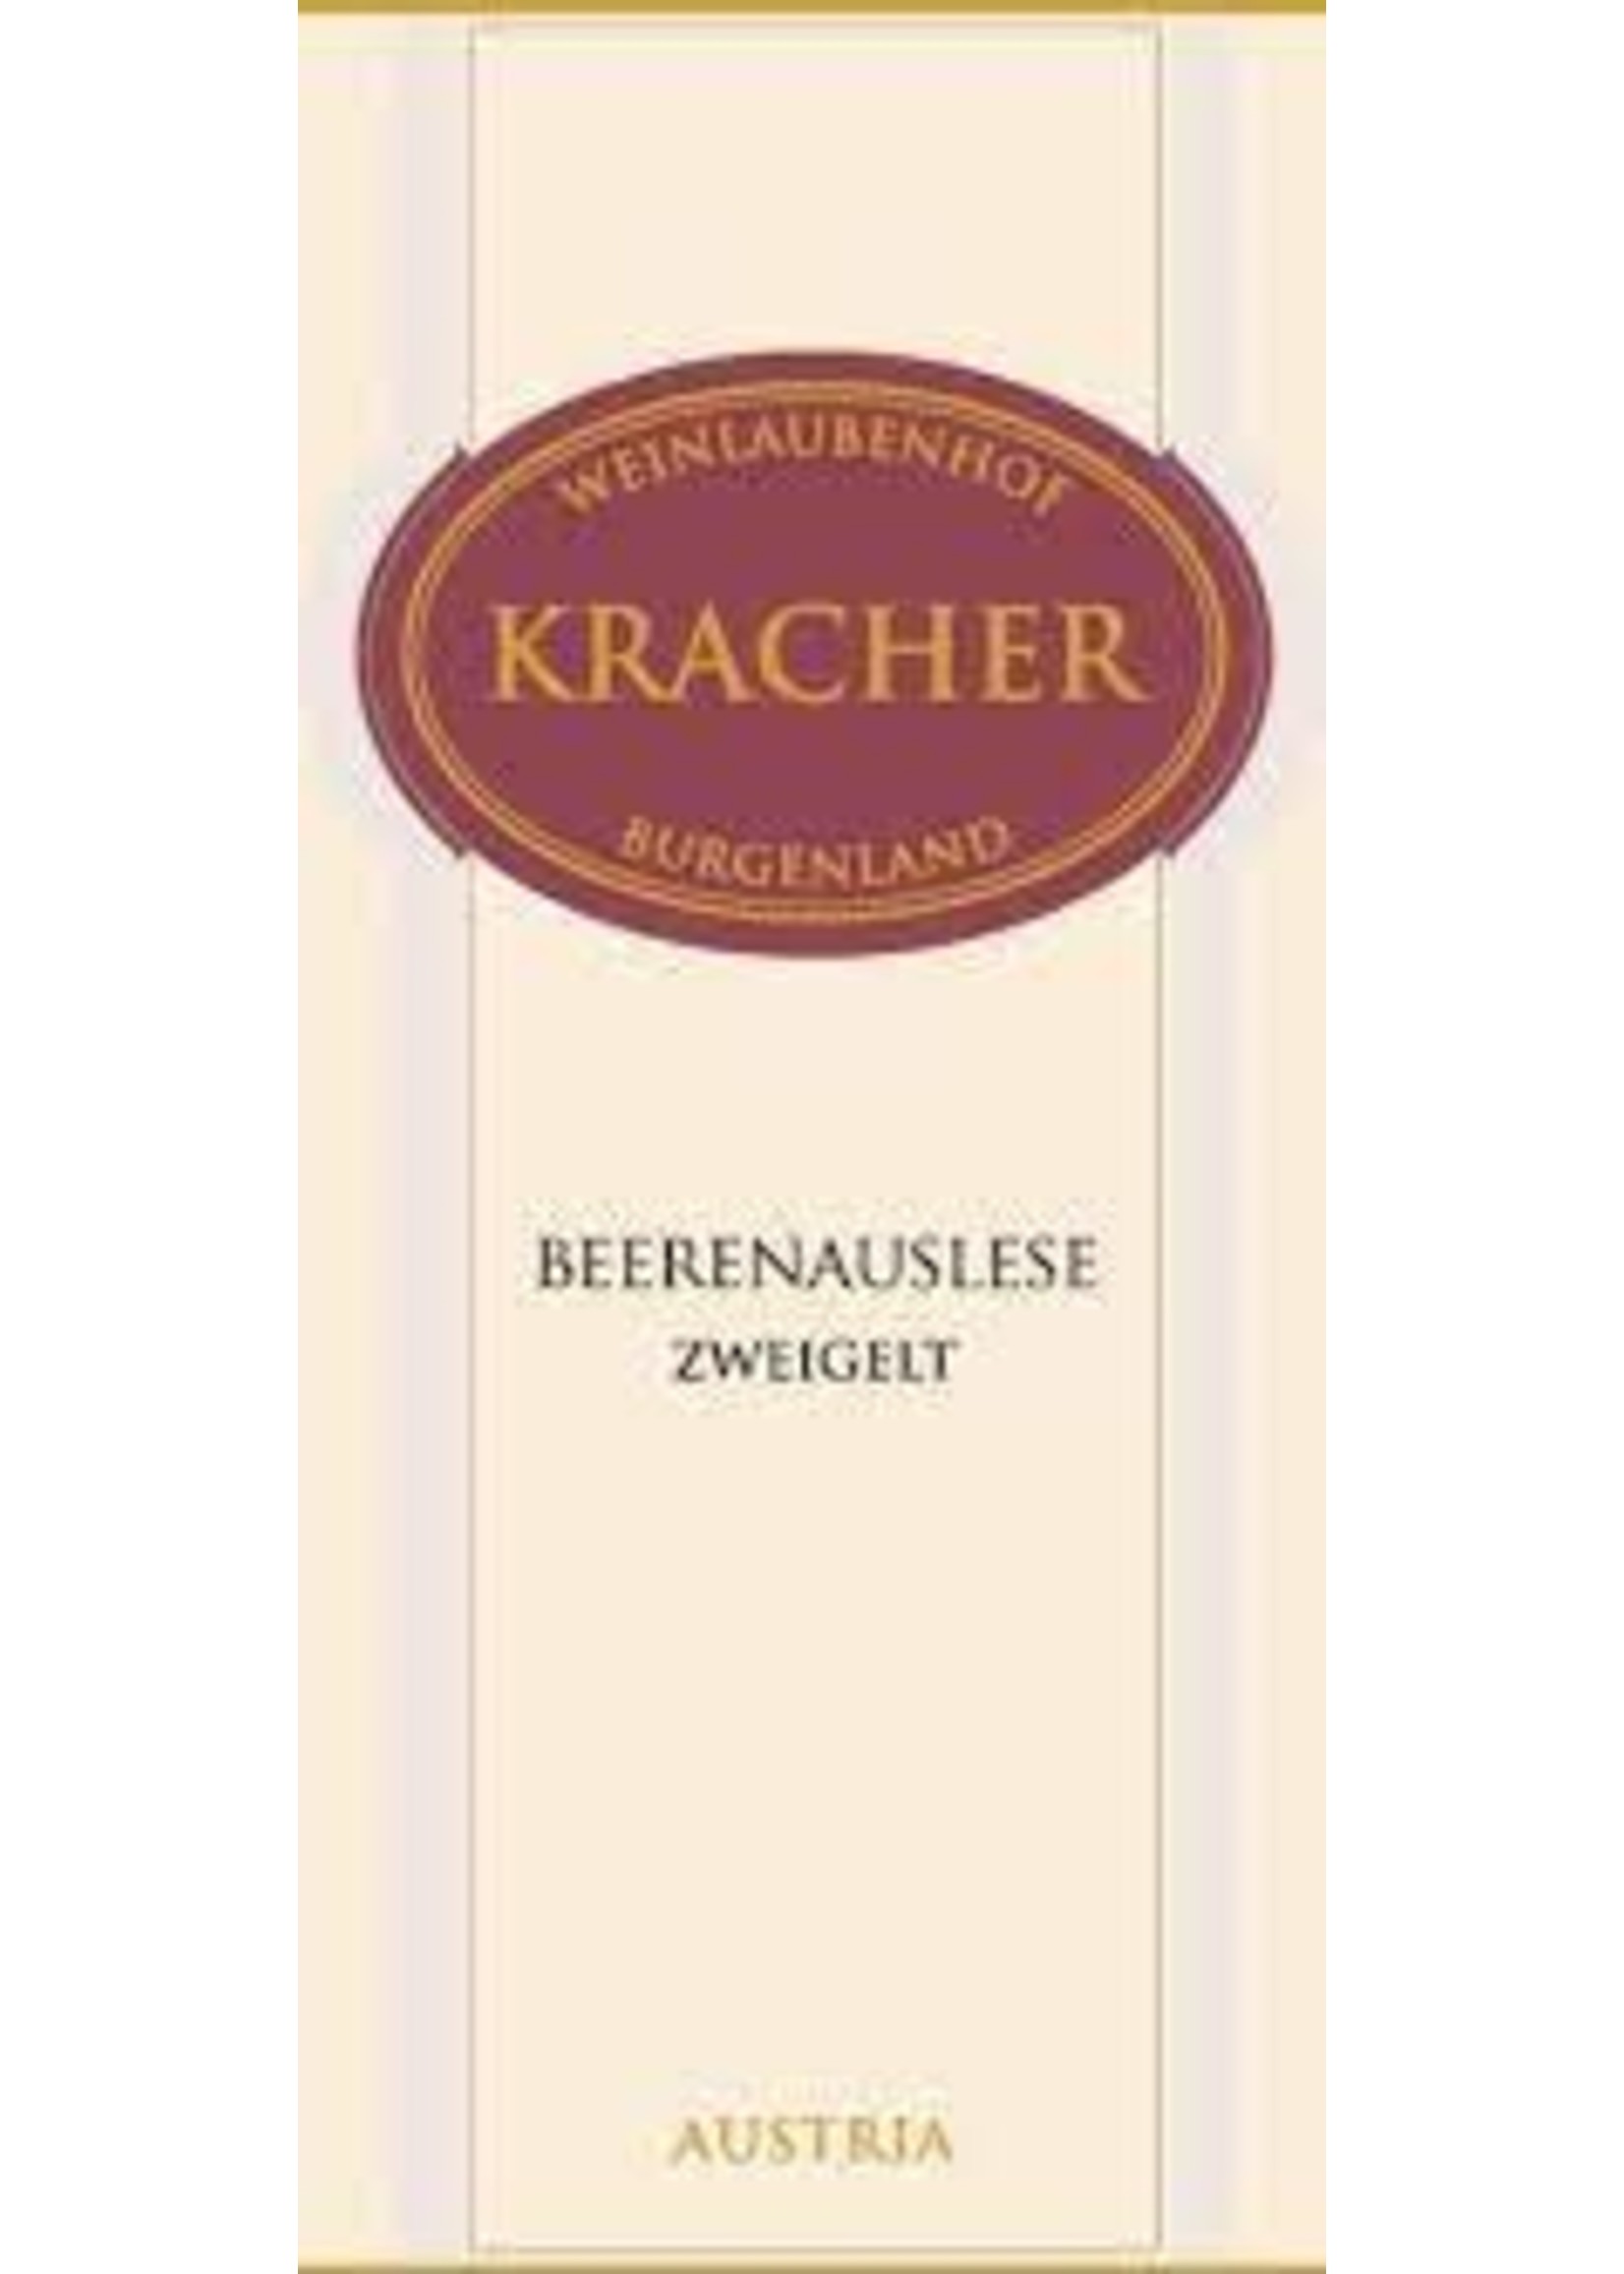 Kracher 2018 Zweigelt Beerenauslese 375ml